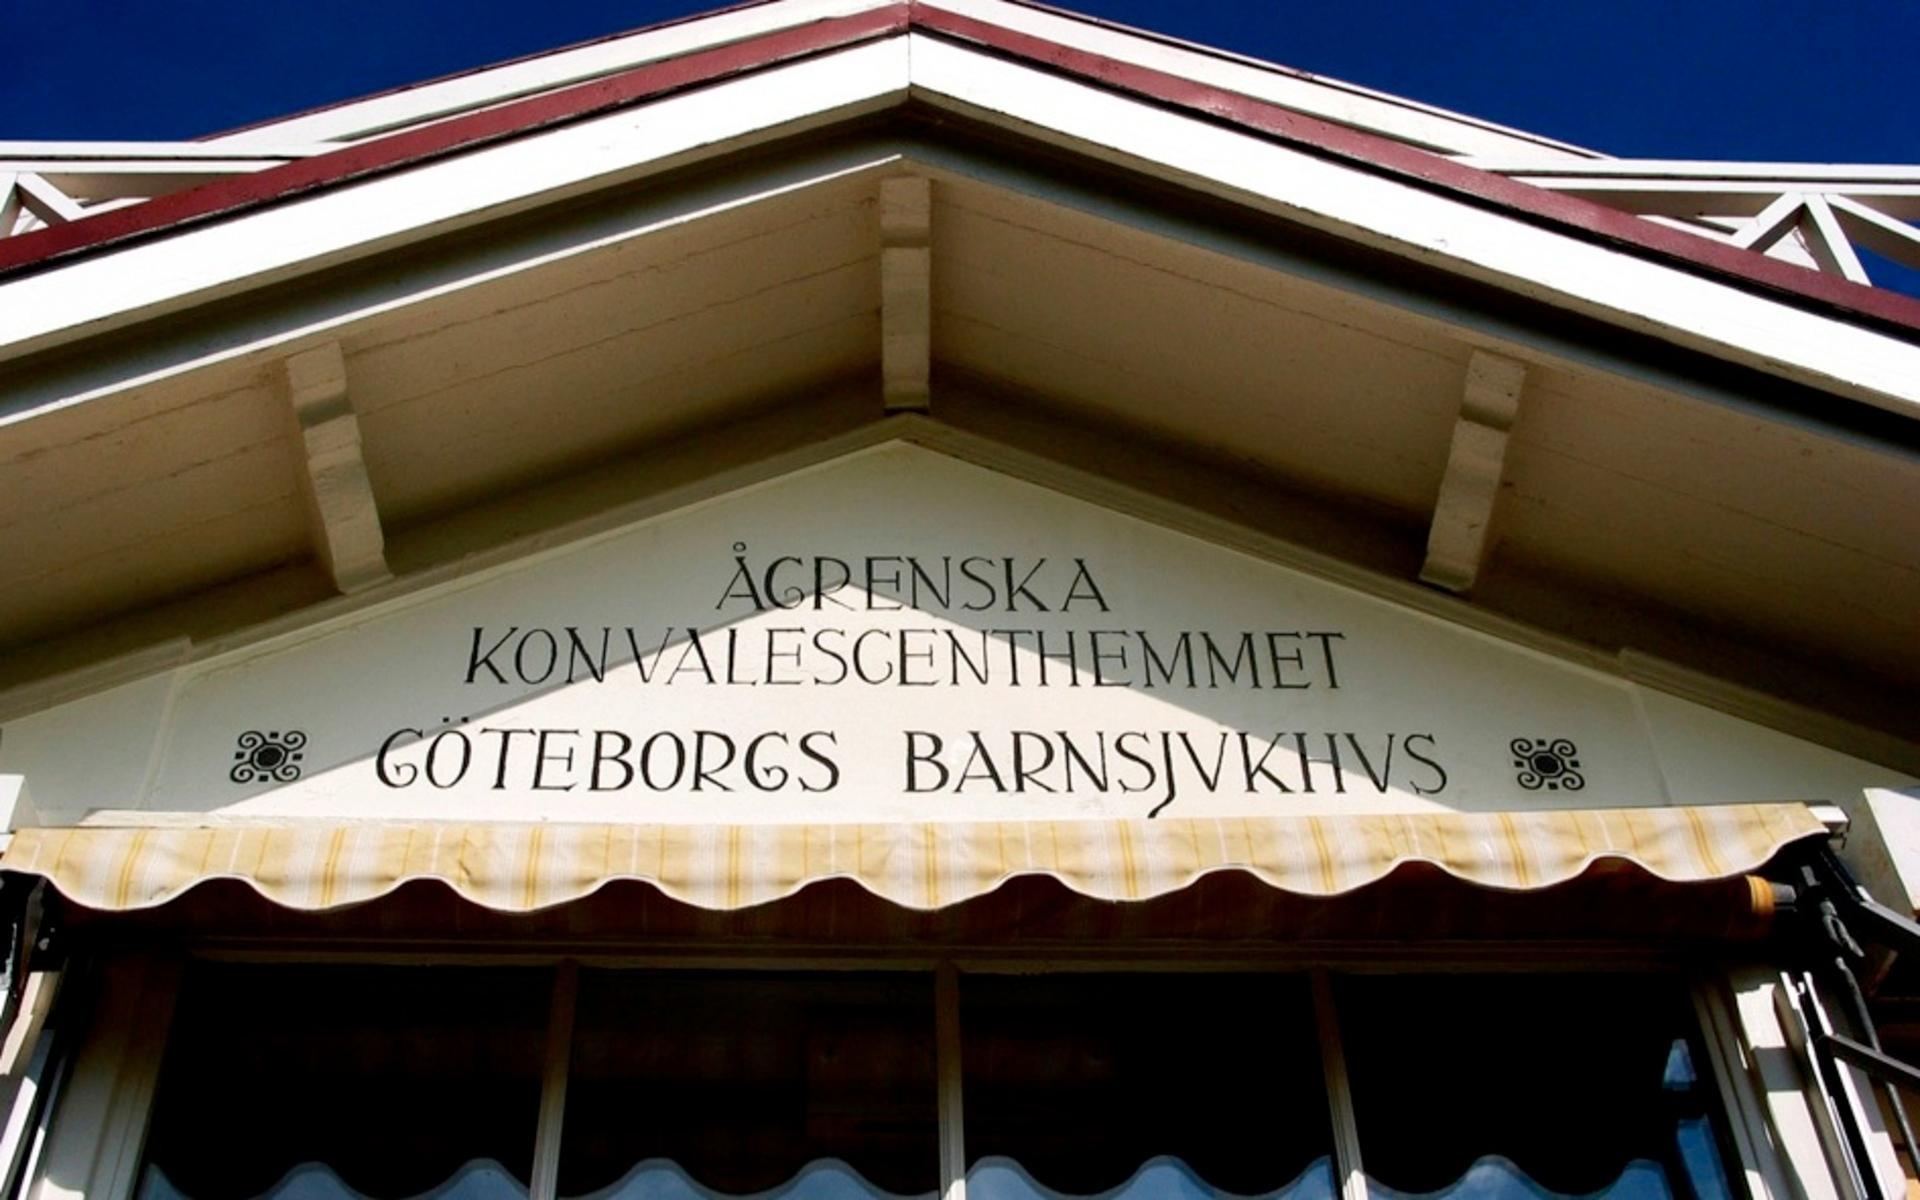 Ågrenska var ett konvalescenthem för barn i Göteborg. 